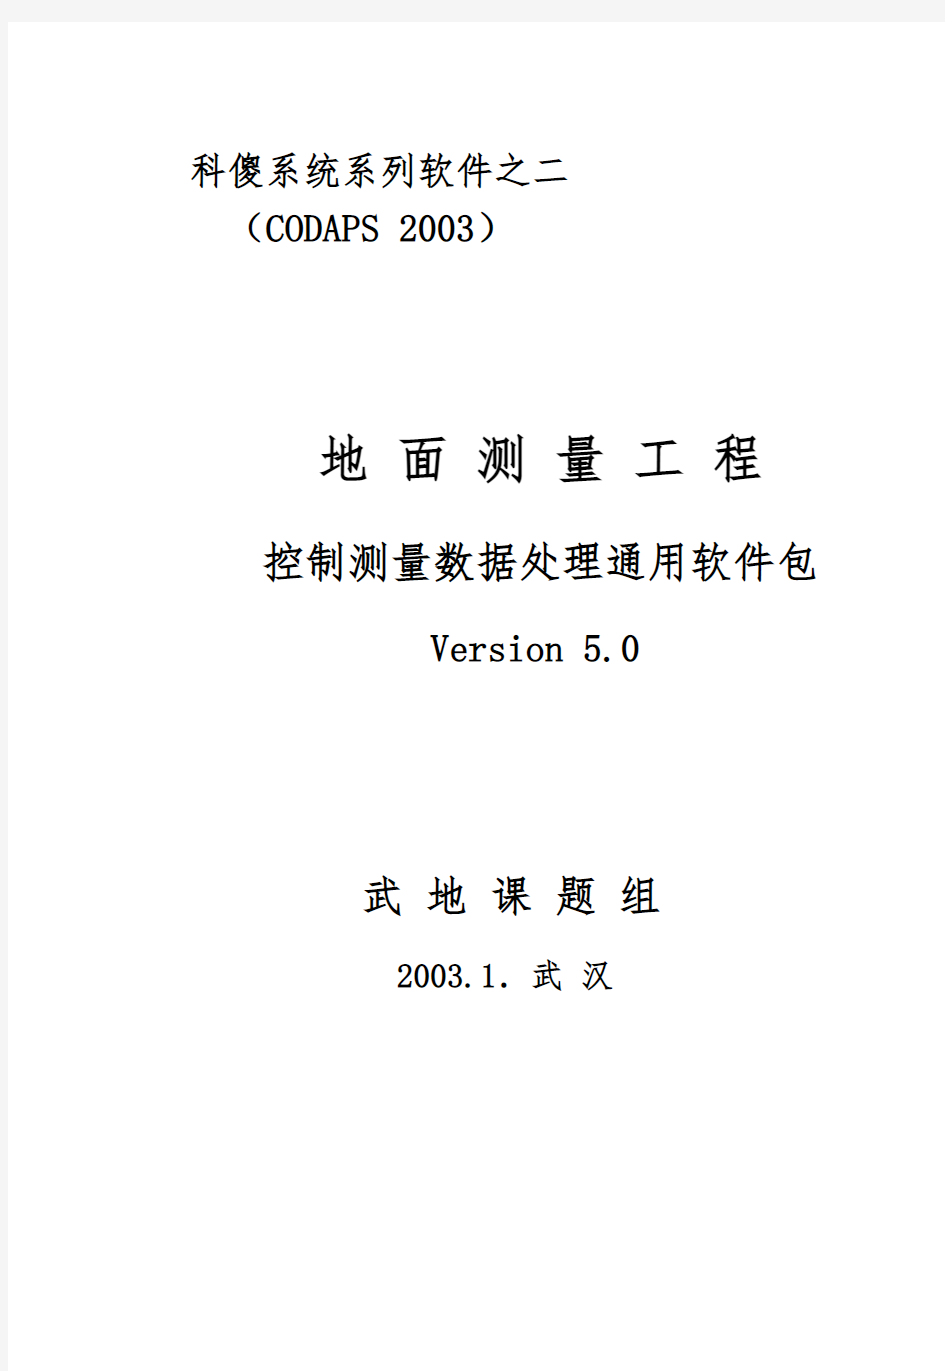 COSA(科傻)-CODAPS软件说明包教学版